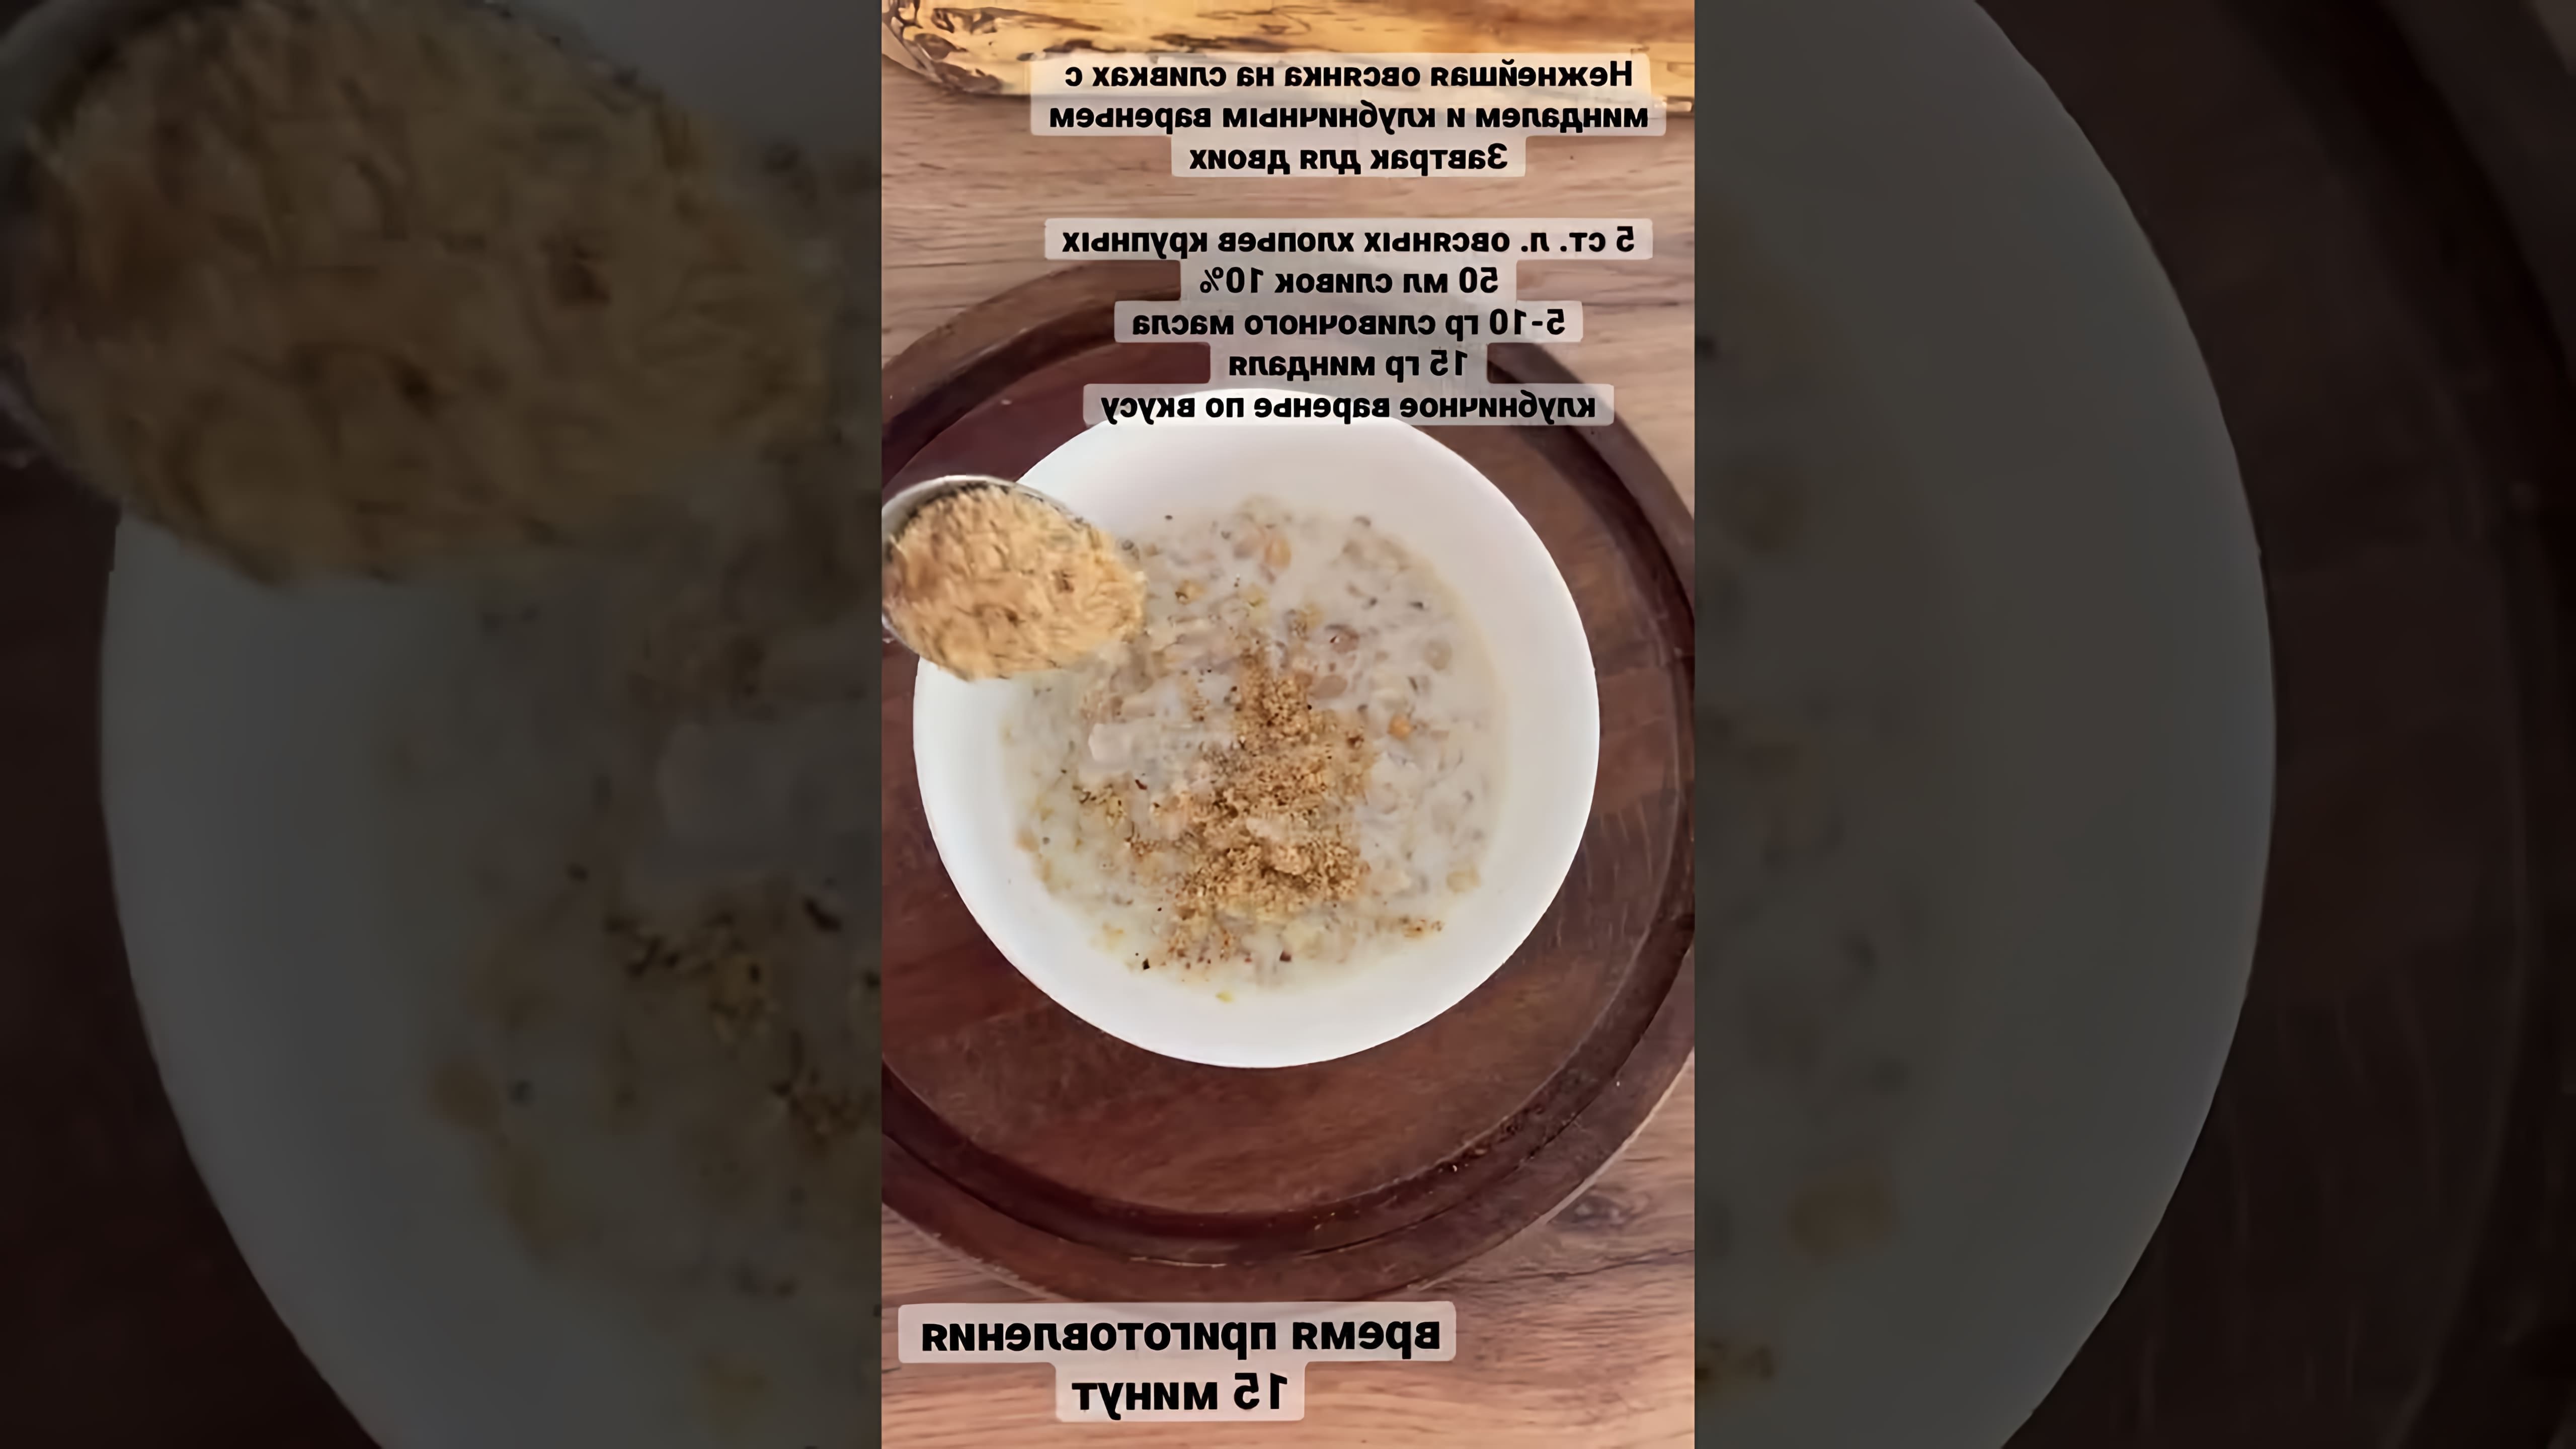 Завтрак для двоих - это видео-ролик, который показывает, как приготовить вкусный и питательный завтрак из овсянки на сливках с миндалем и клубничным вареньем